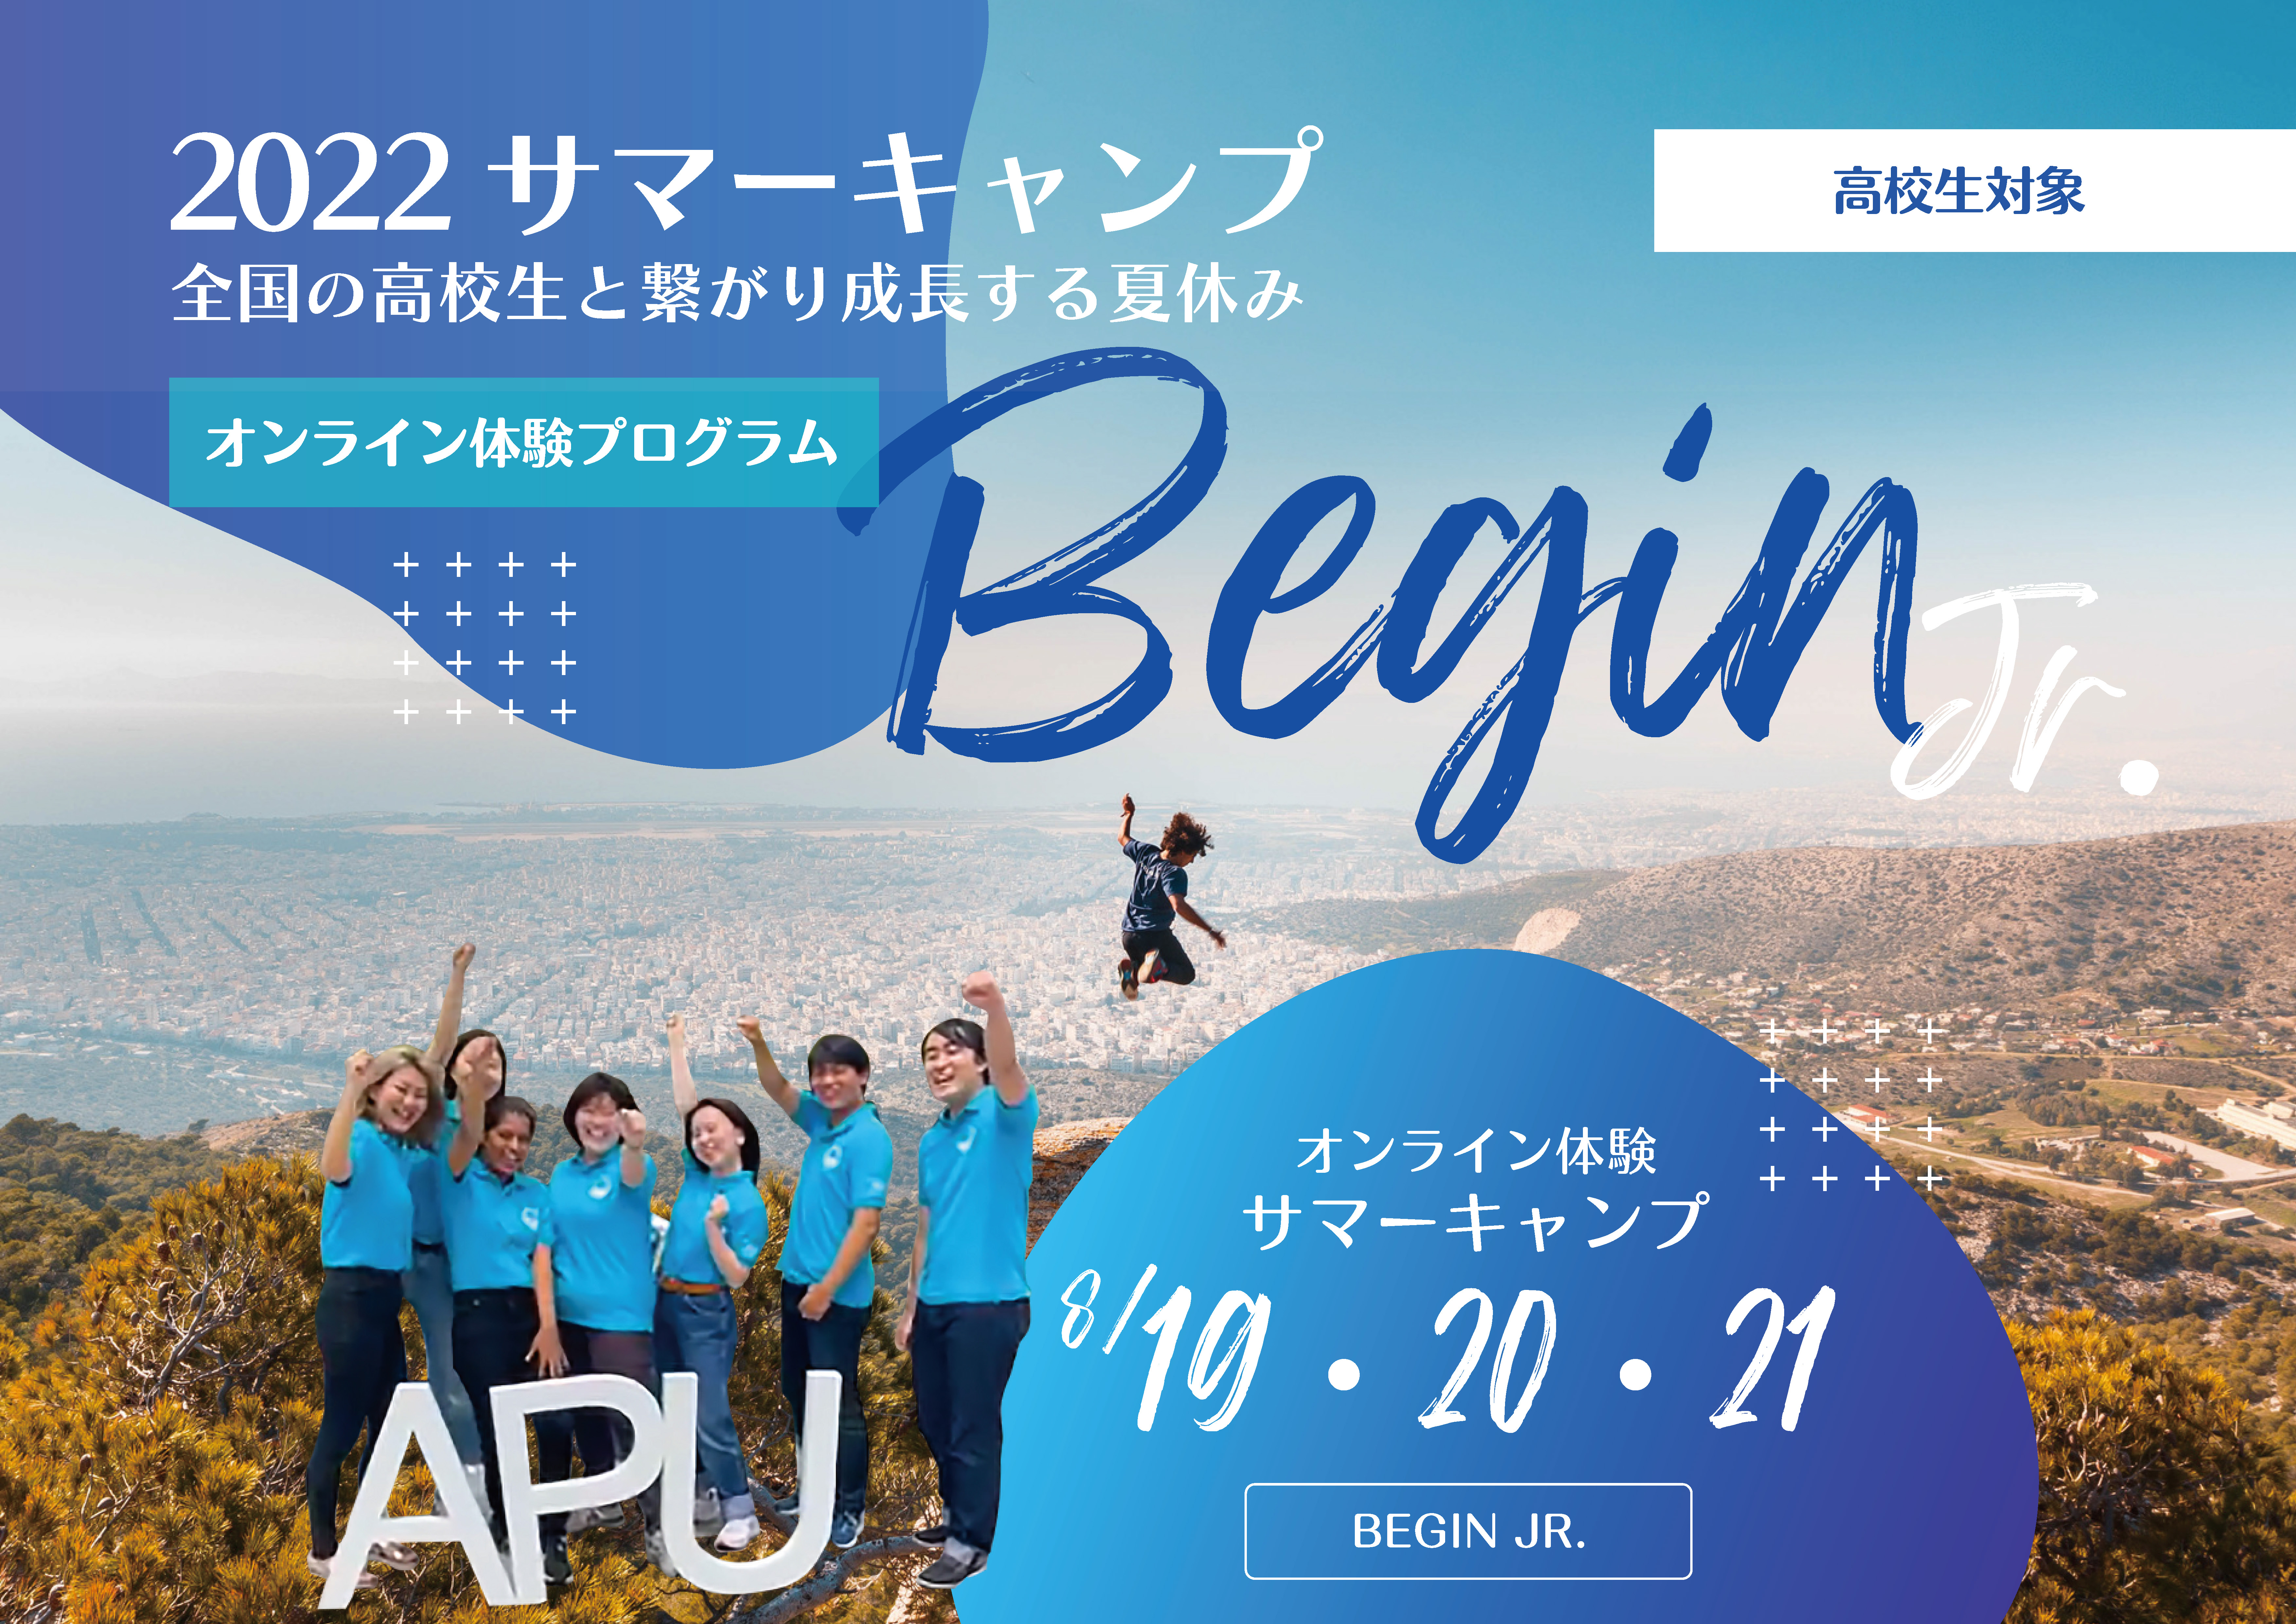 参加申込開始 高1 3年生対象 22 夏 無限成長のapuオンラインサマーキャンプ Begin Jr 立命館アジア太平洋大学のプレスリリース